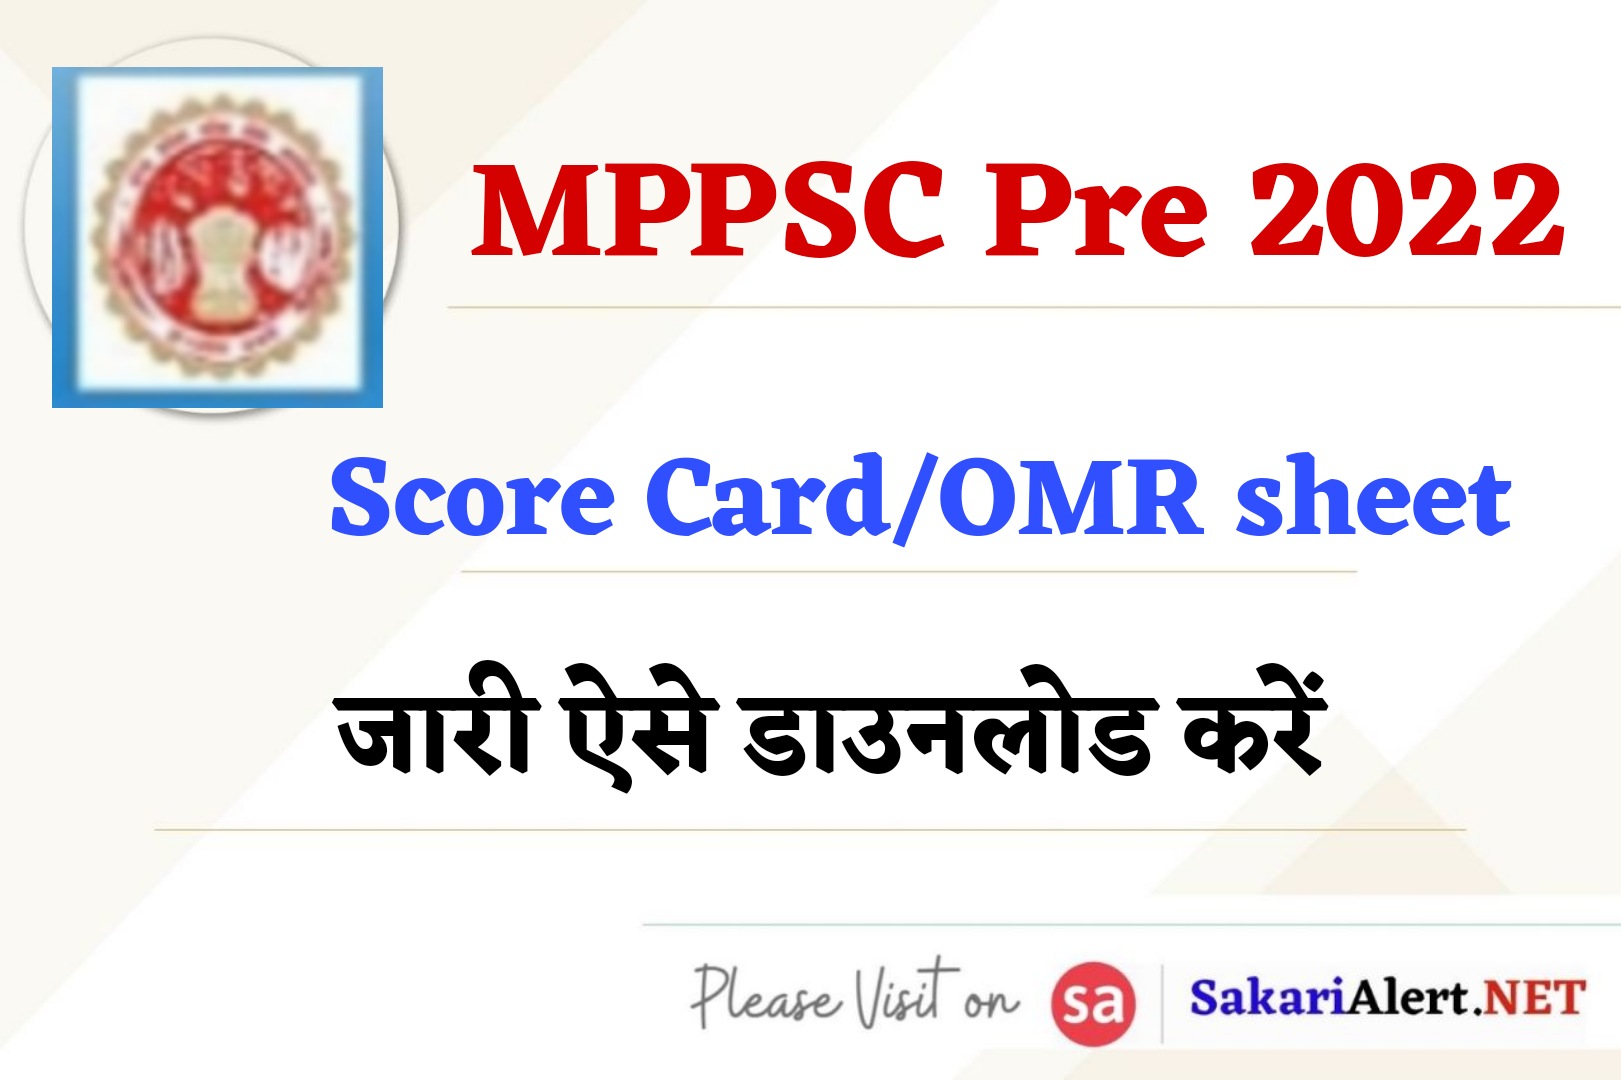 MPPSC Pre 2022 Score Card, OMR Sheet